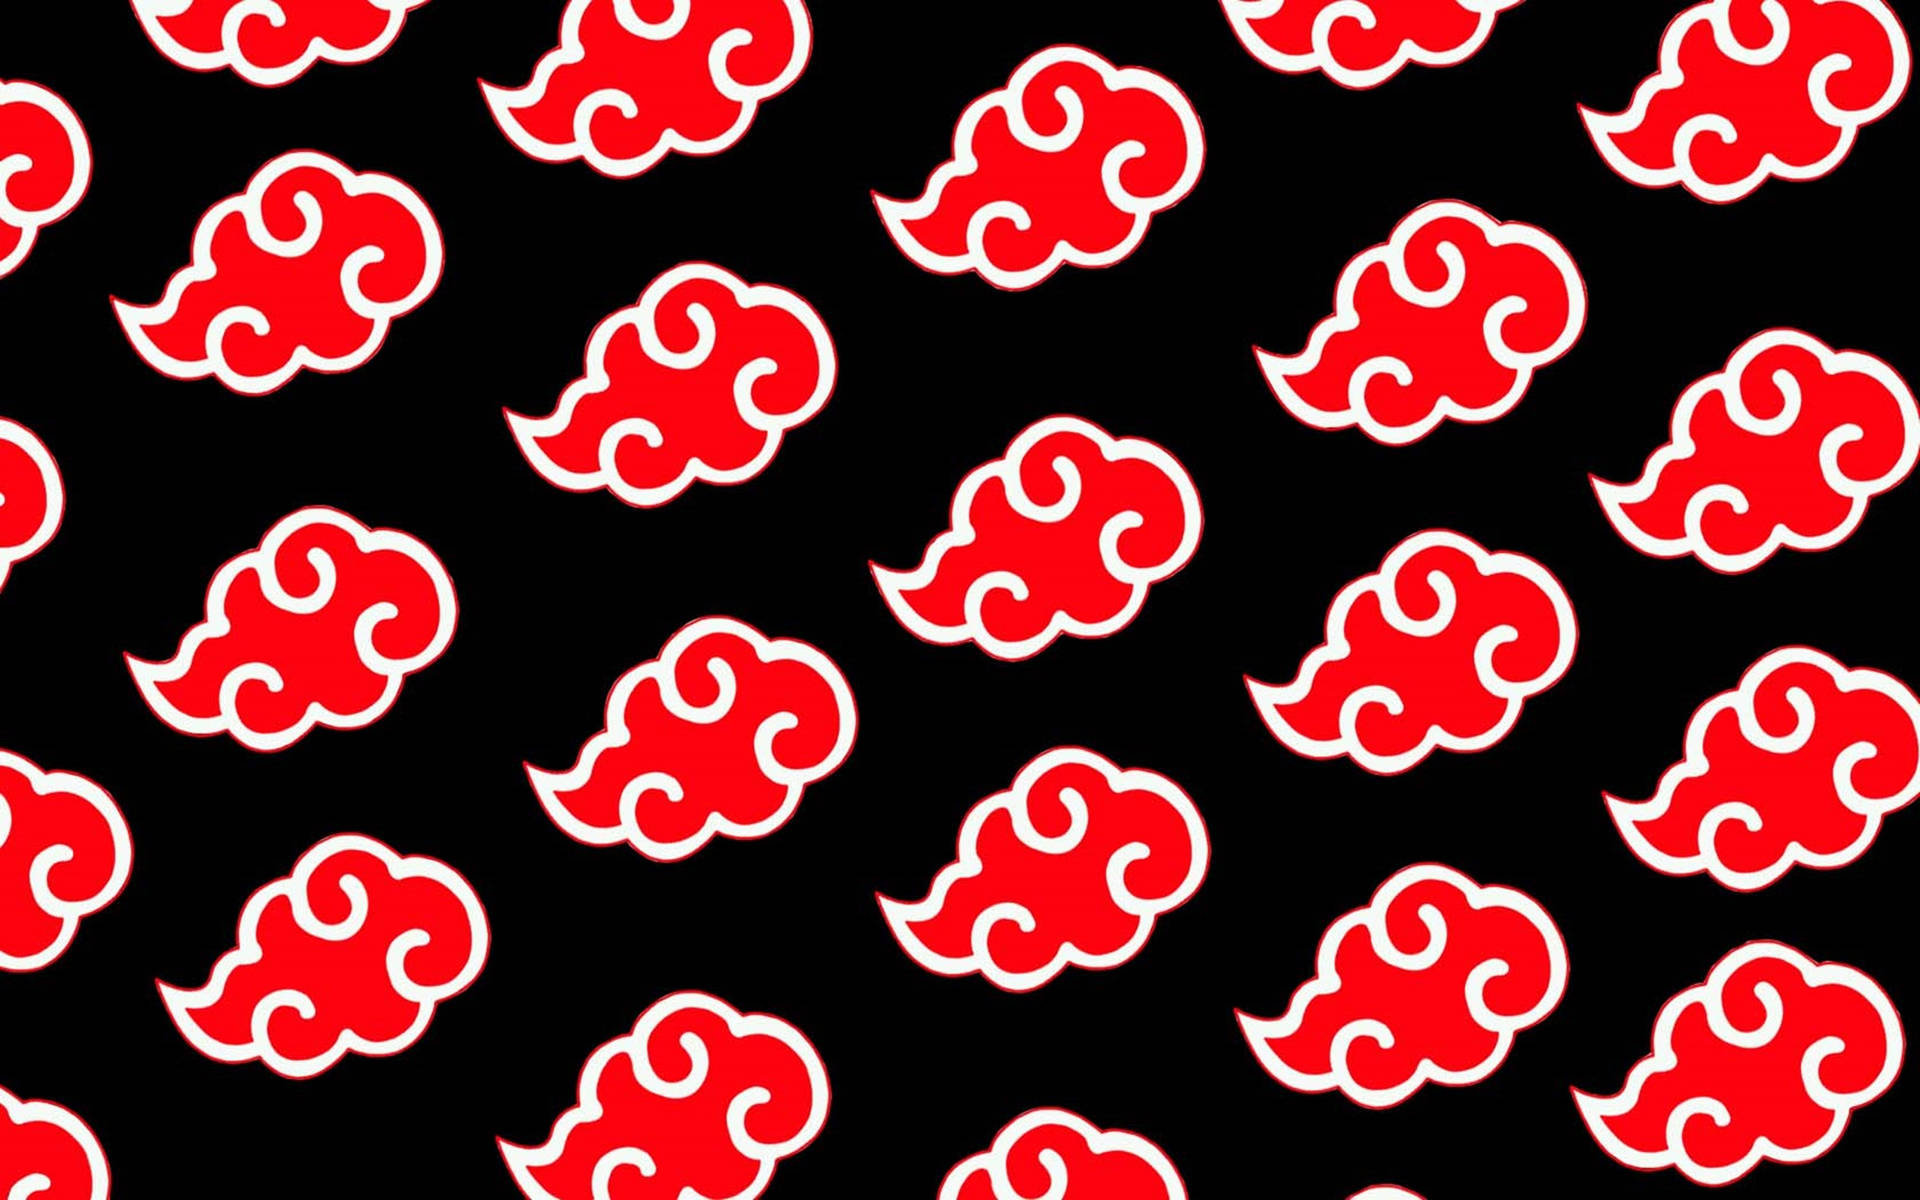 Akatsuki Logo Amegakure Red Clouds Wallpaper